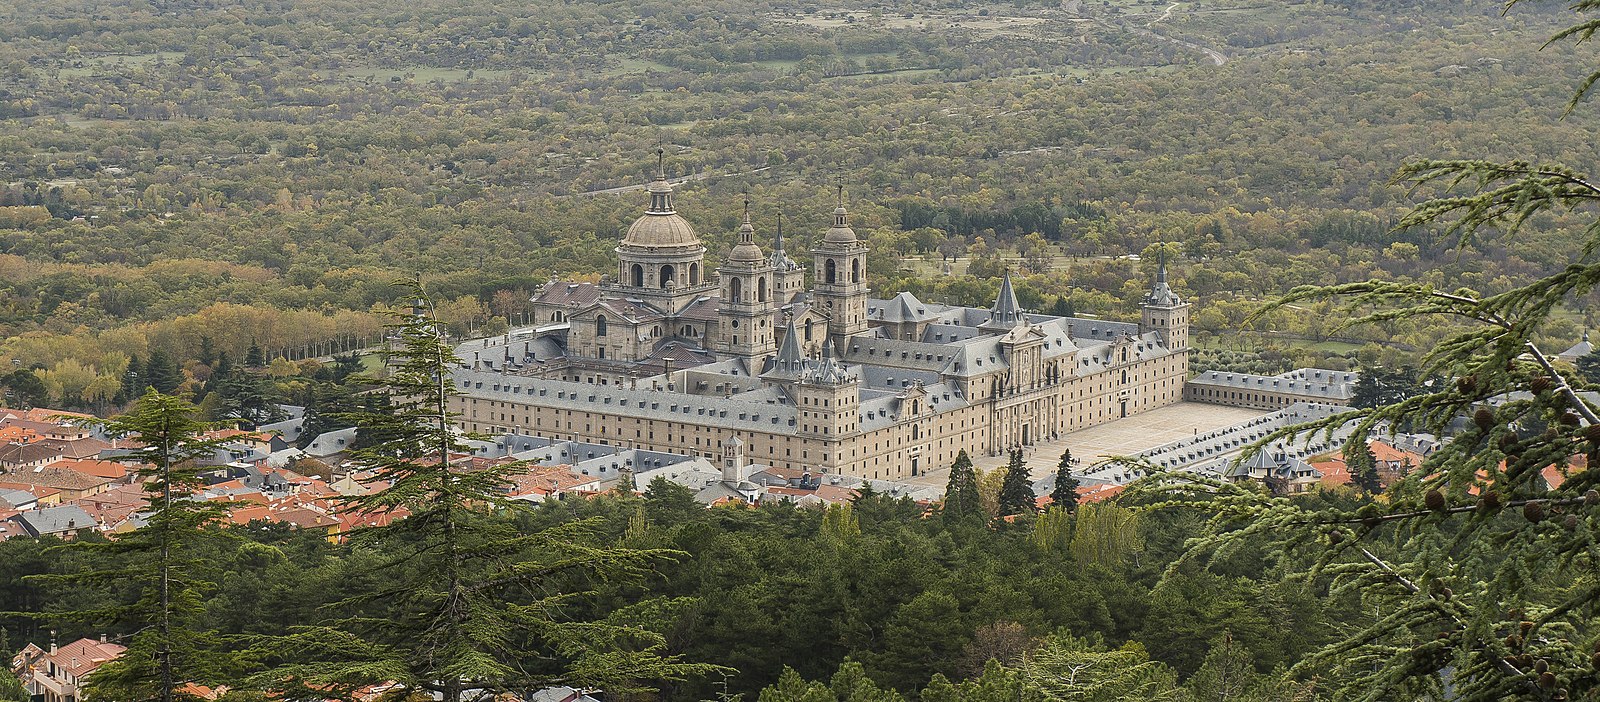 Monastery of San Lorenzo de El Escorial